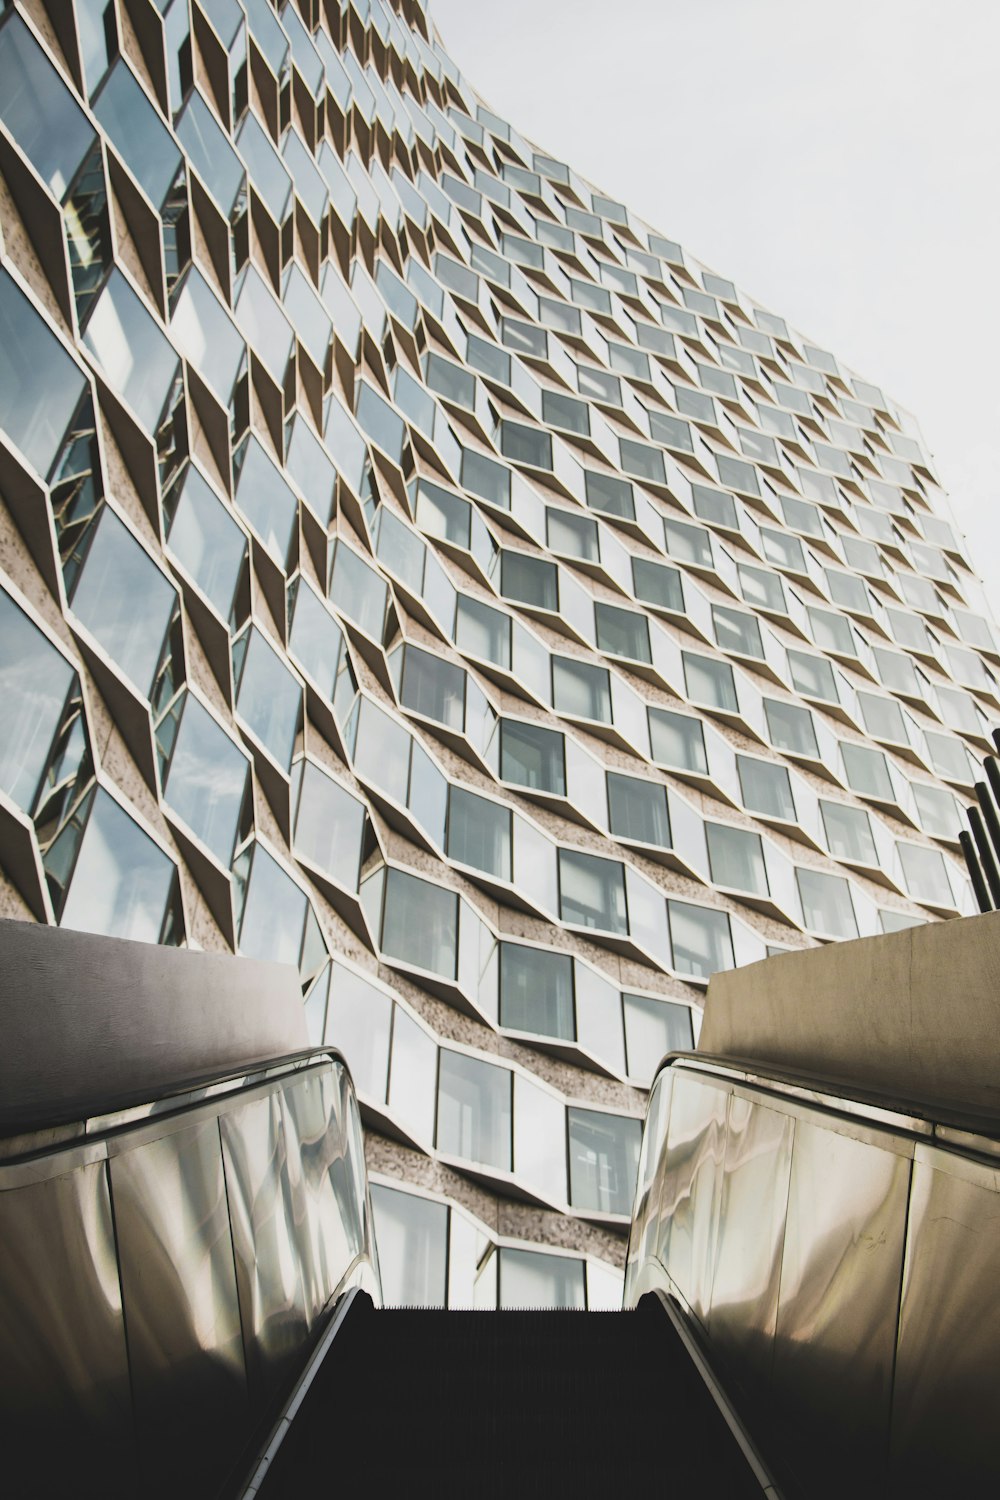 fotografia de baixo ângulo de um edifício de vidro alto de uma escada rolante